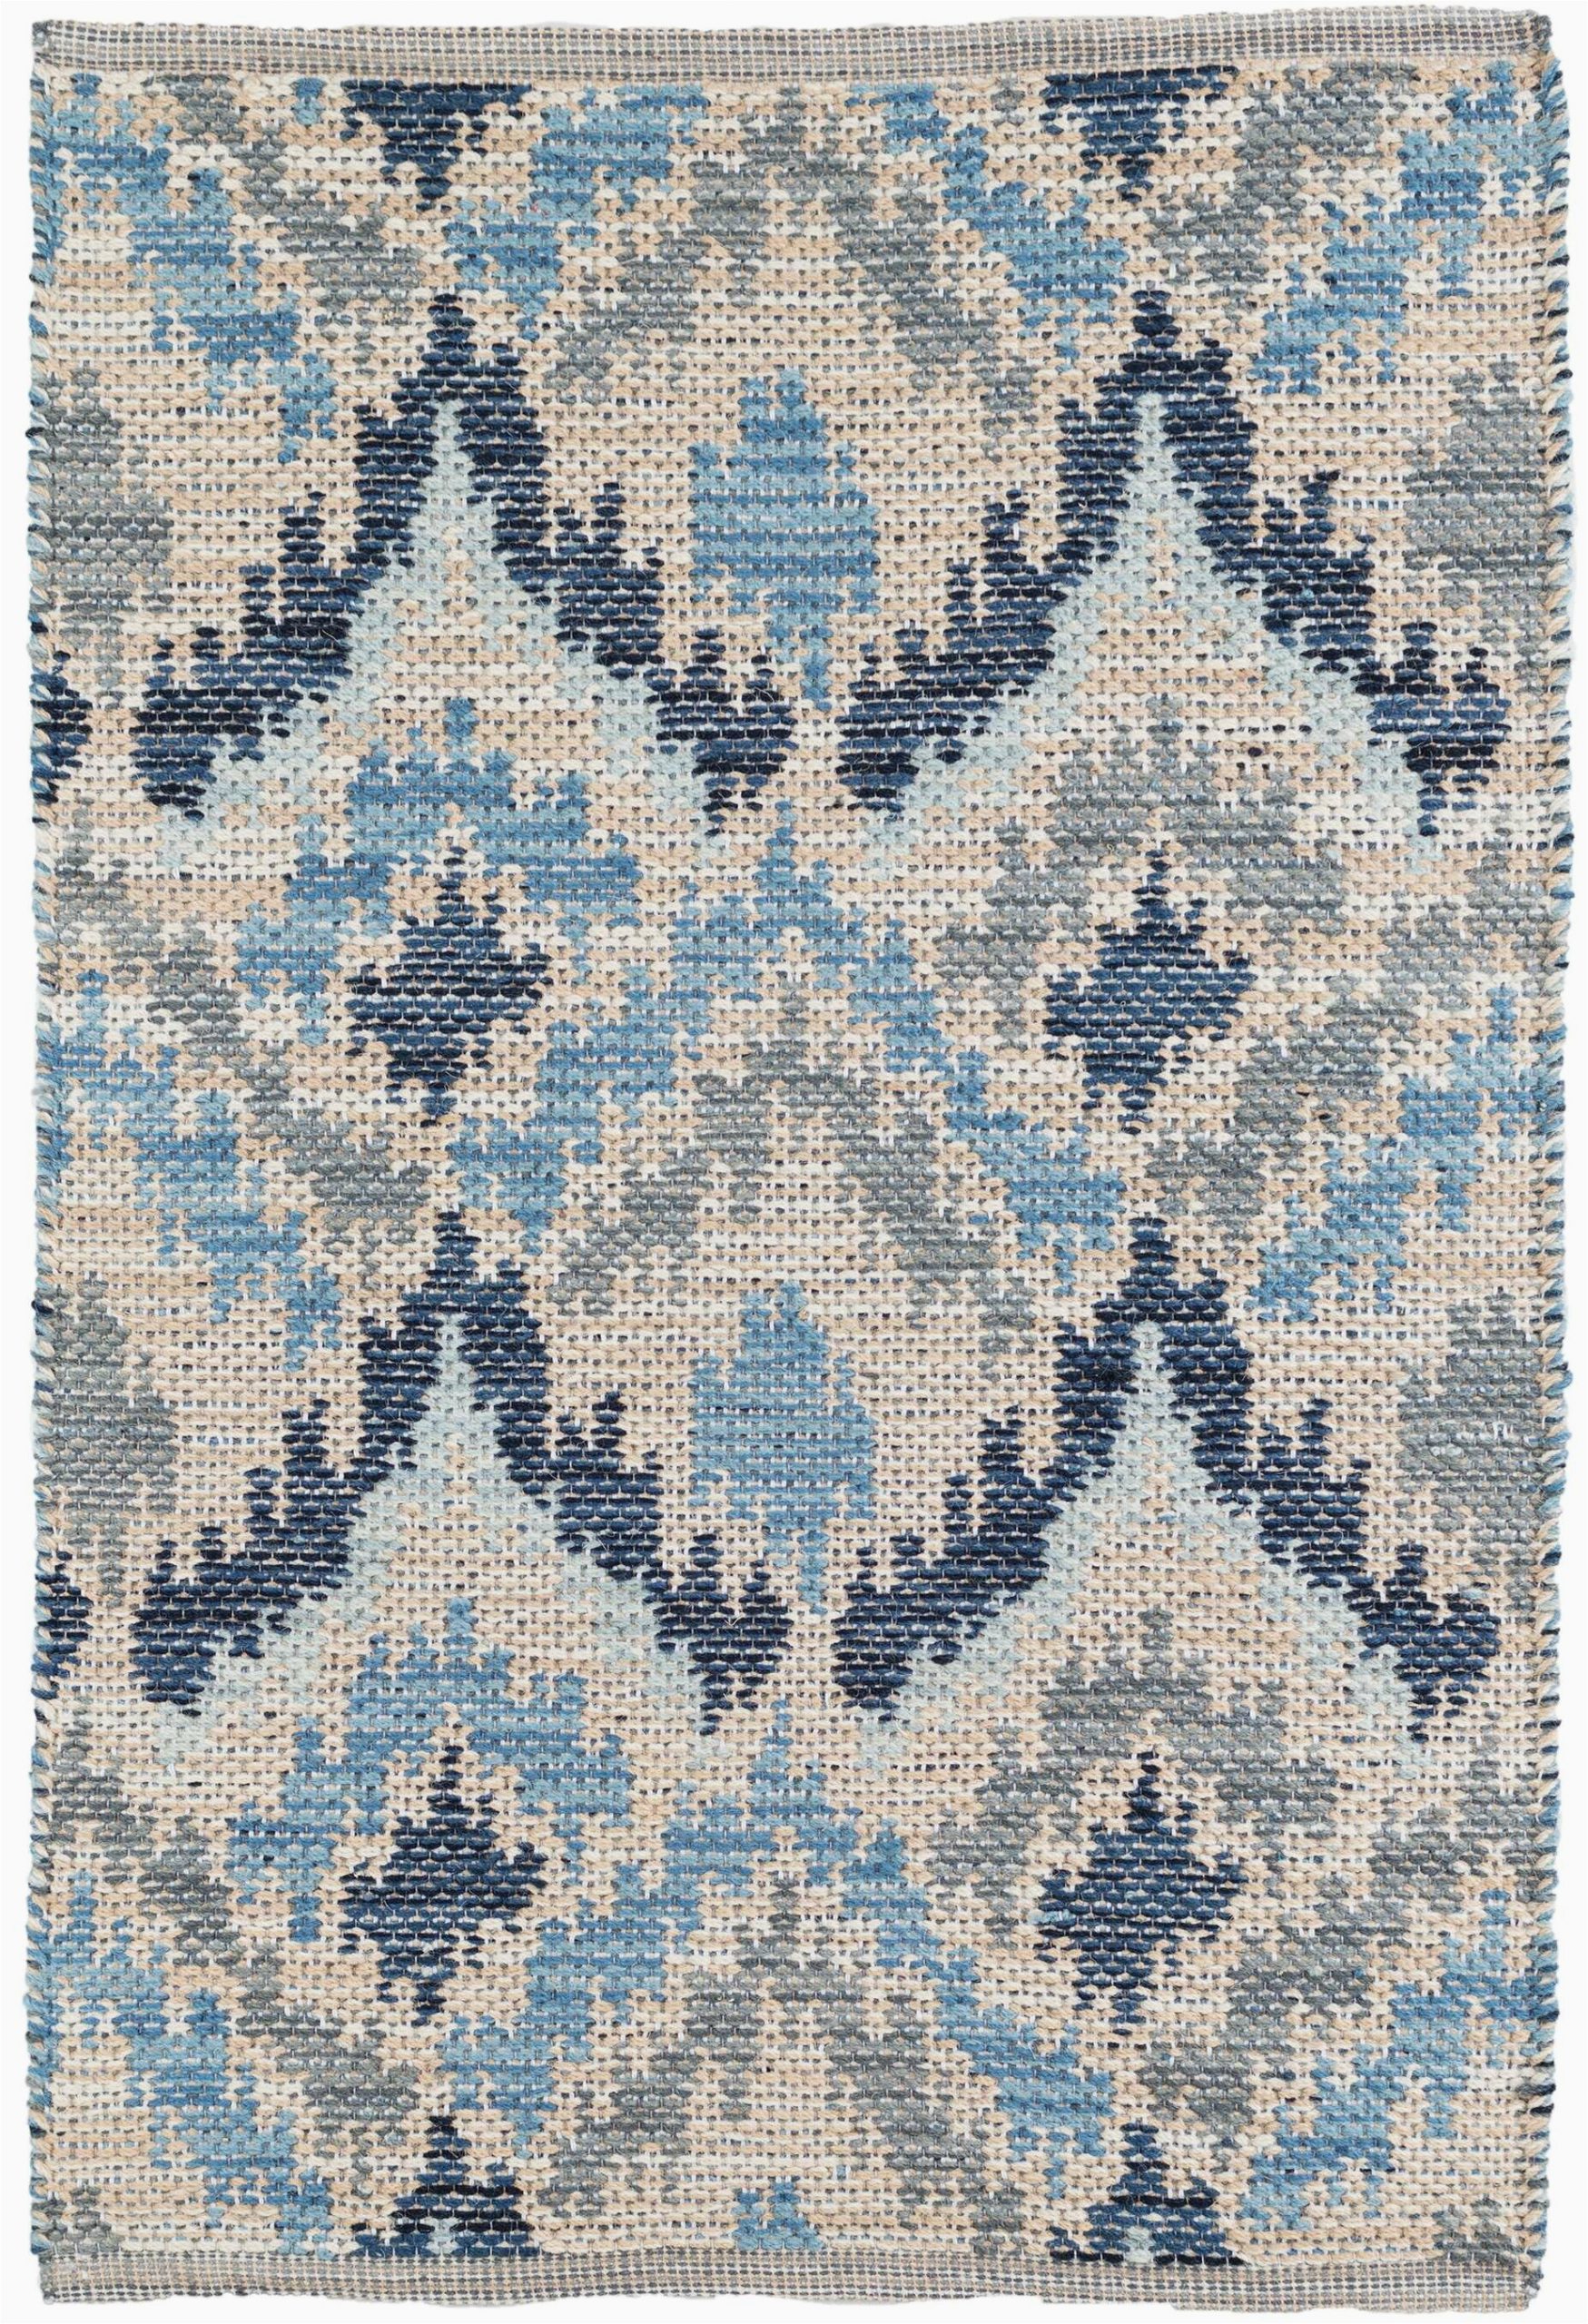 medina ikat handmade flatweave bluegraycream area rug